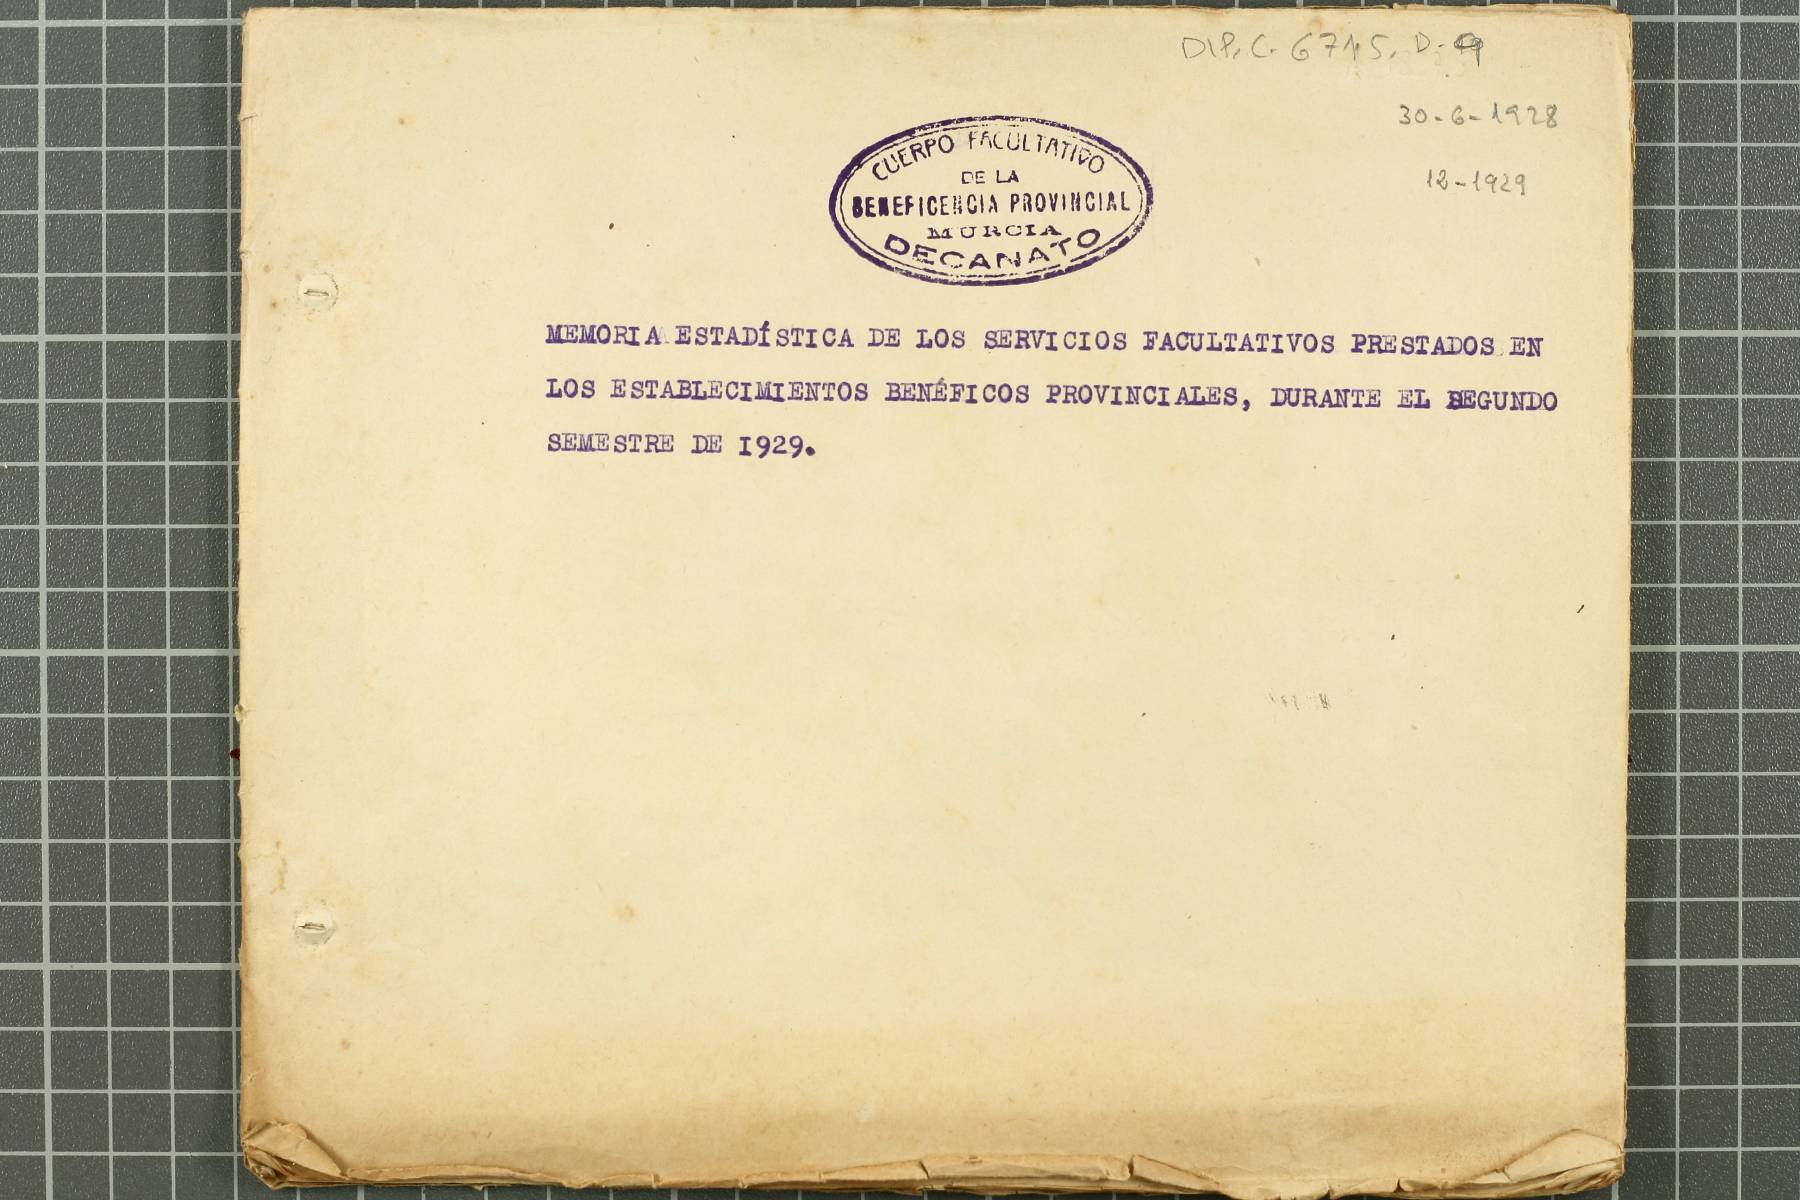 Memoria estadística de los servicios facultativos prestados en los establecimientos benéficos provinciales durante el segundo semestre de 1929.